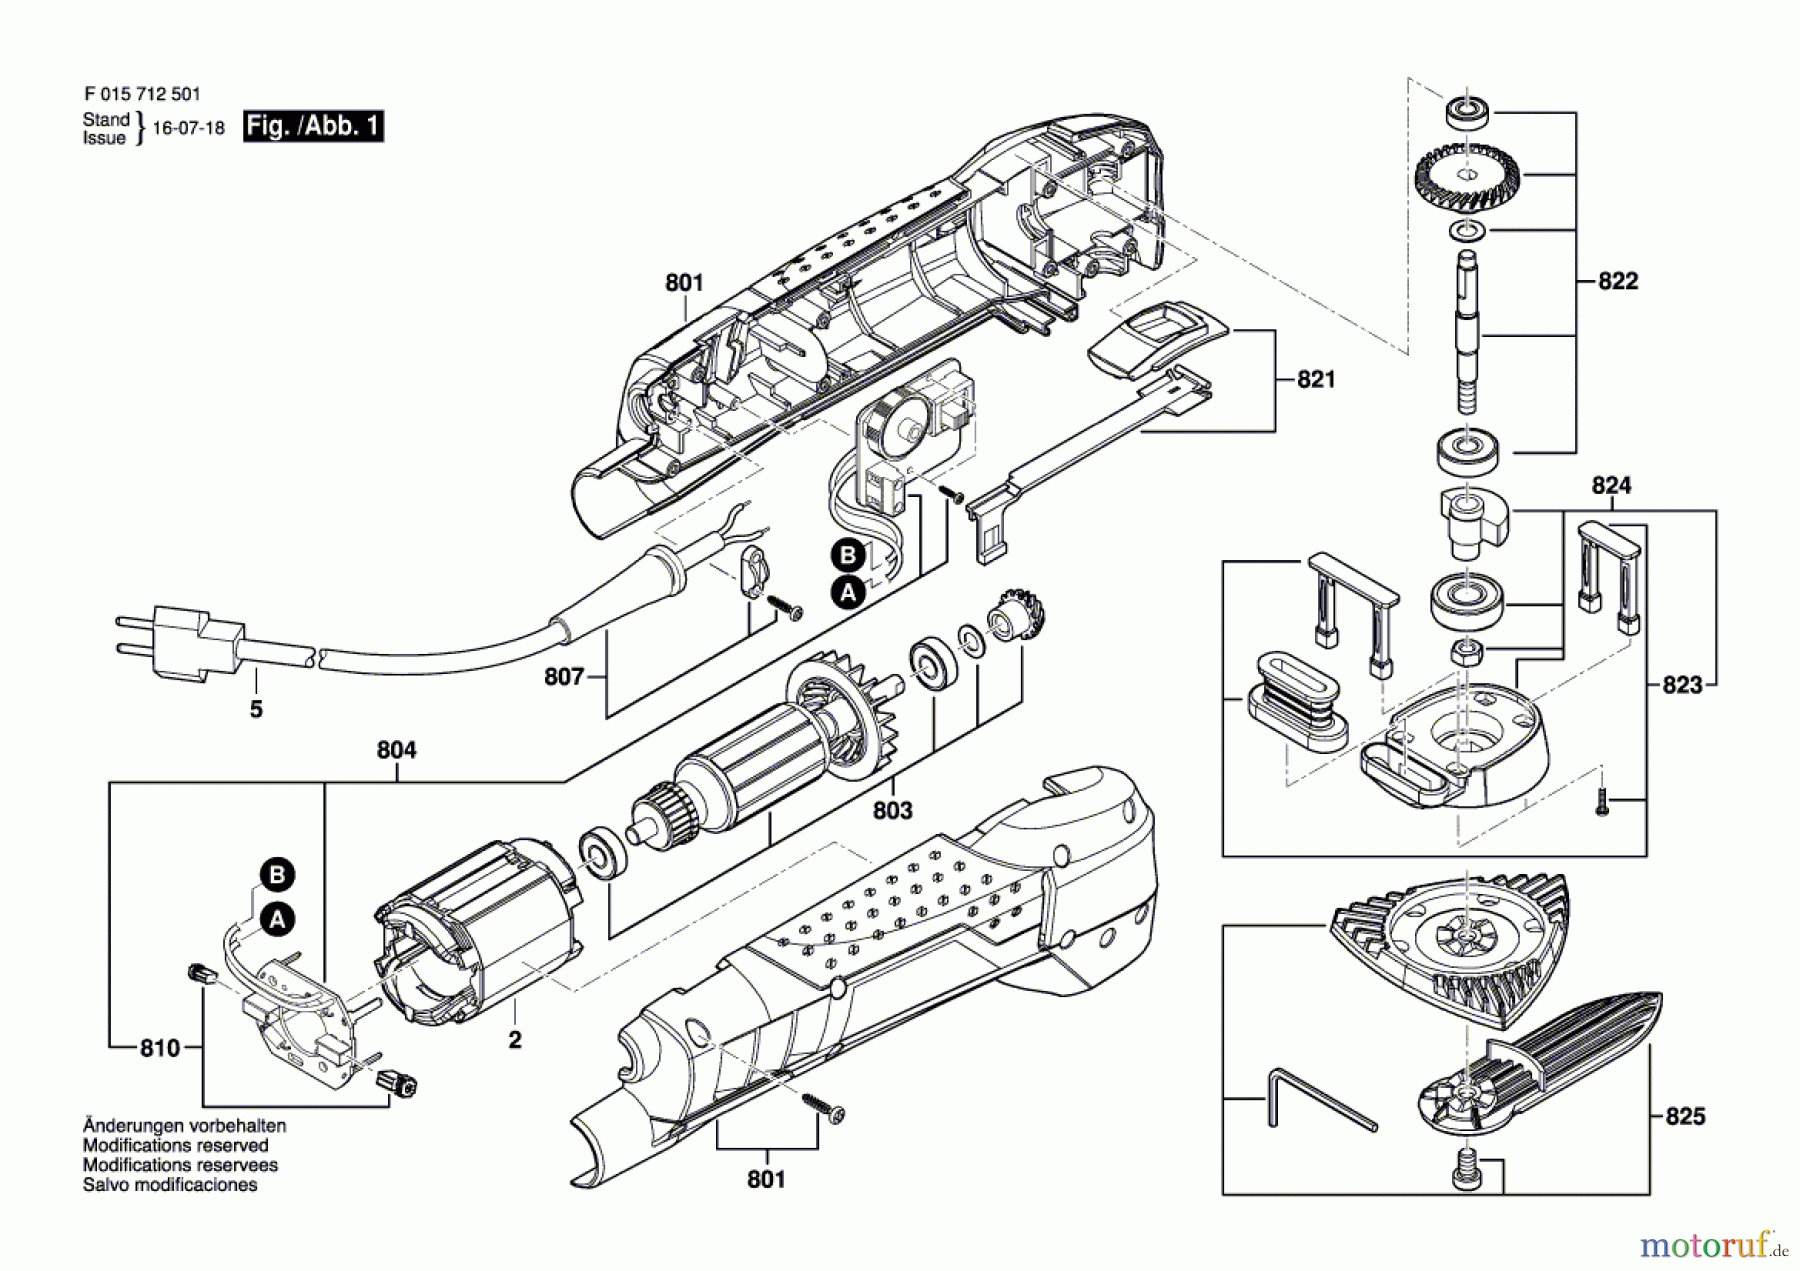  Bosch Werkzeug Hw-Deltaschleifer 7126 Seite 1